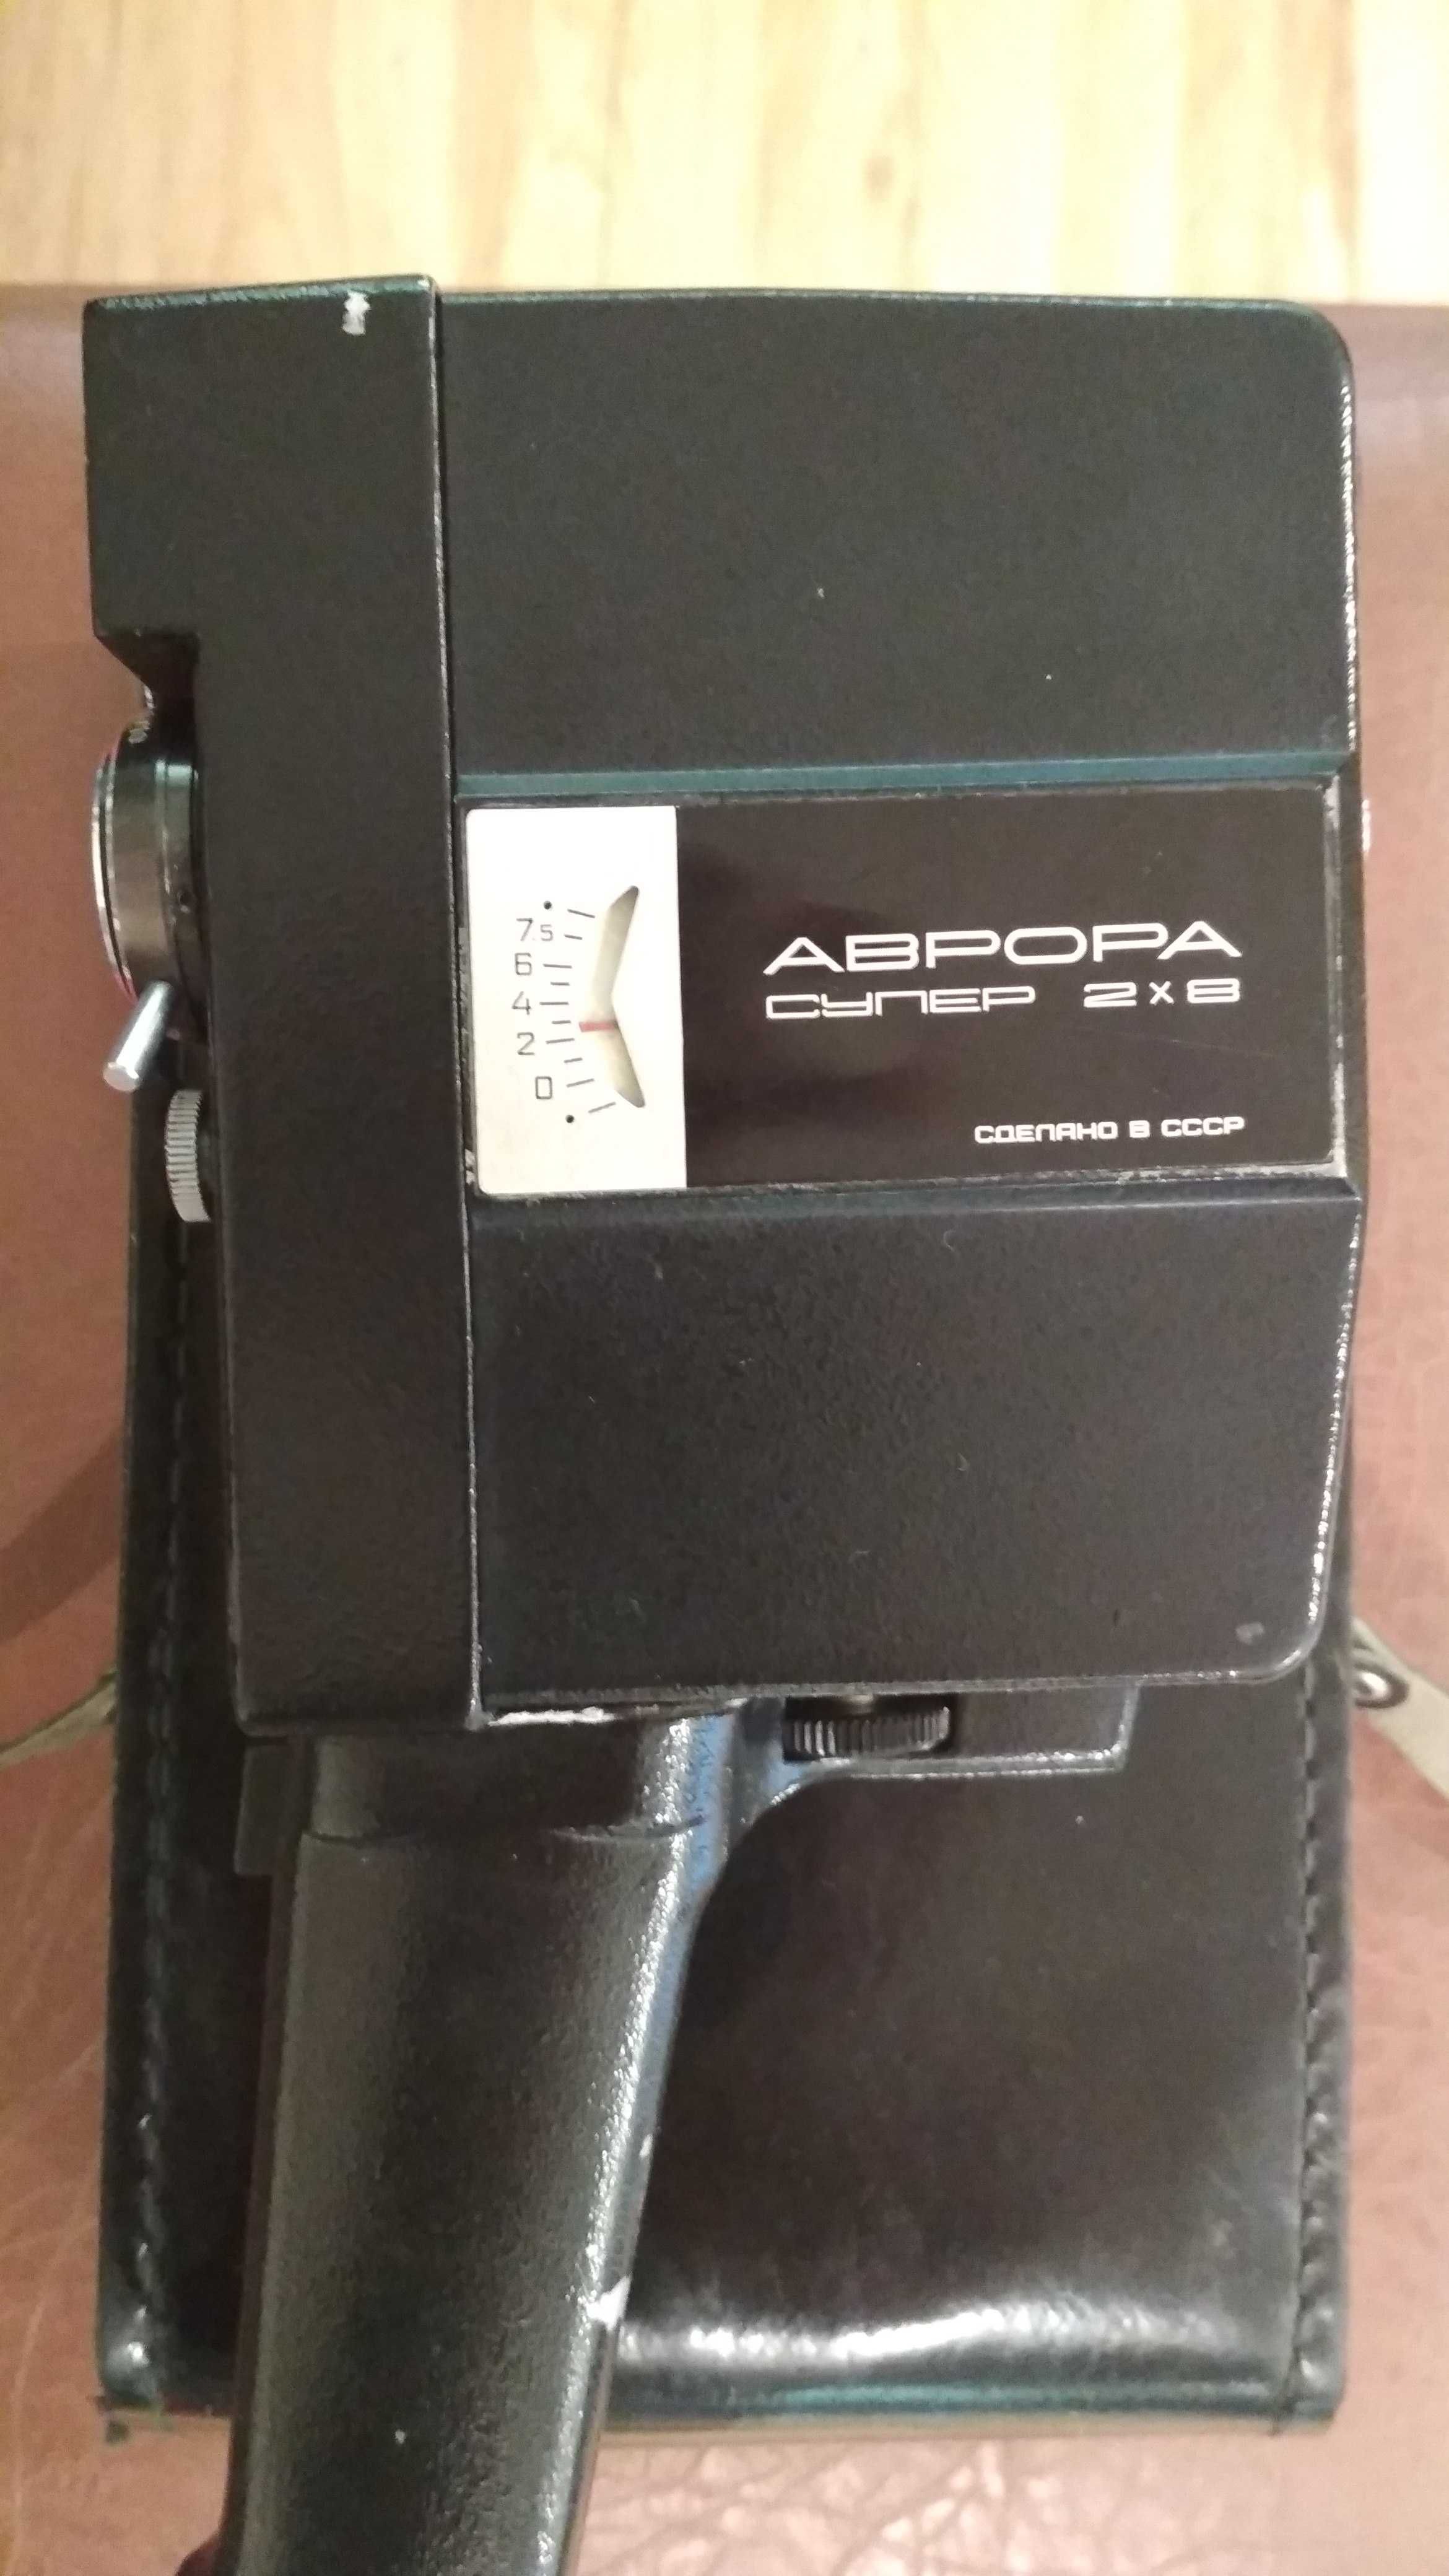 Видеокамера АВРОРА супер 2х8 сделано в СССР коллекционная новая .